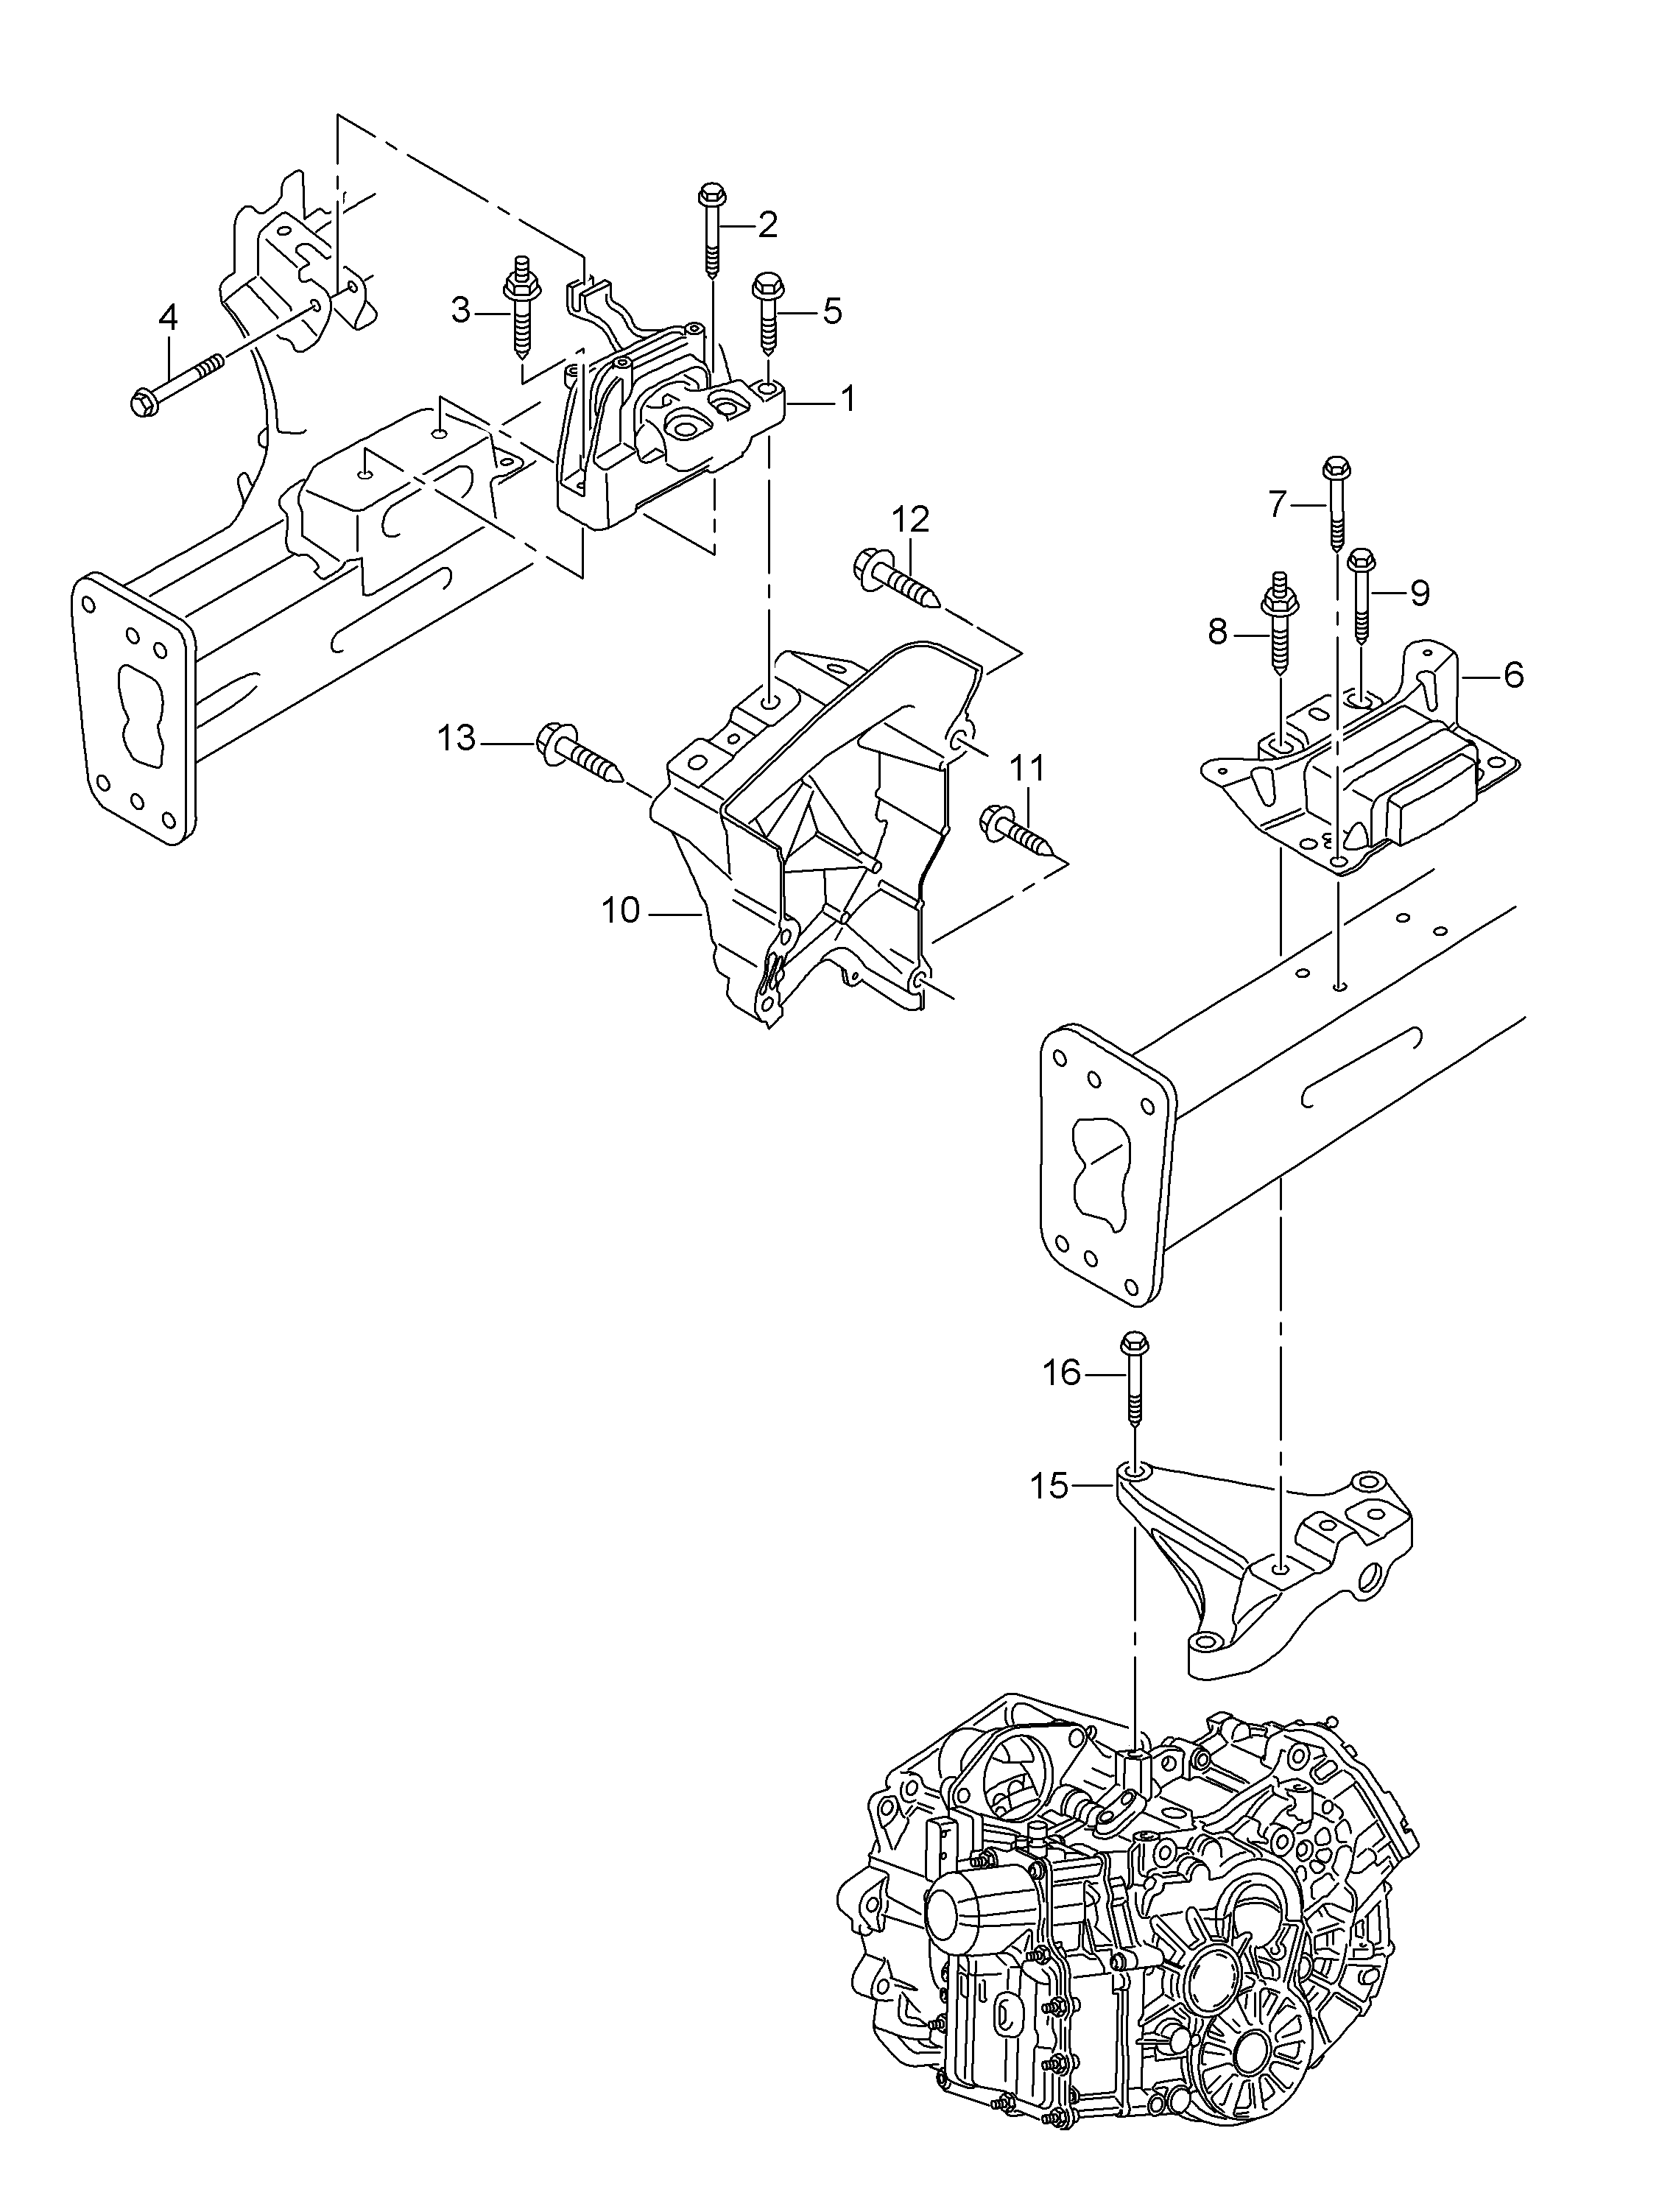 elementy mocujace silnik
i skrzynie biegow - Leon/Leon 4(LE)  